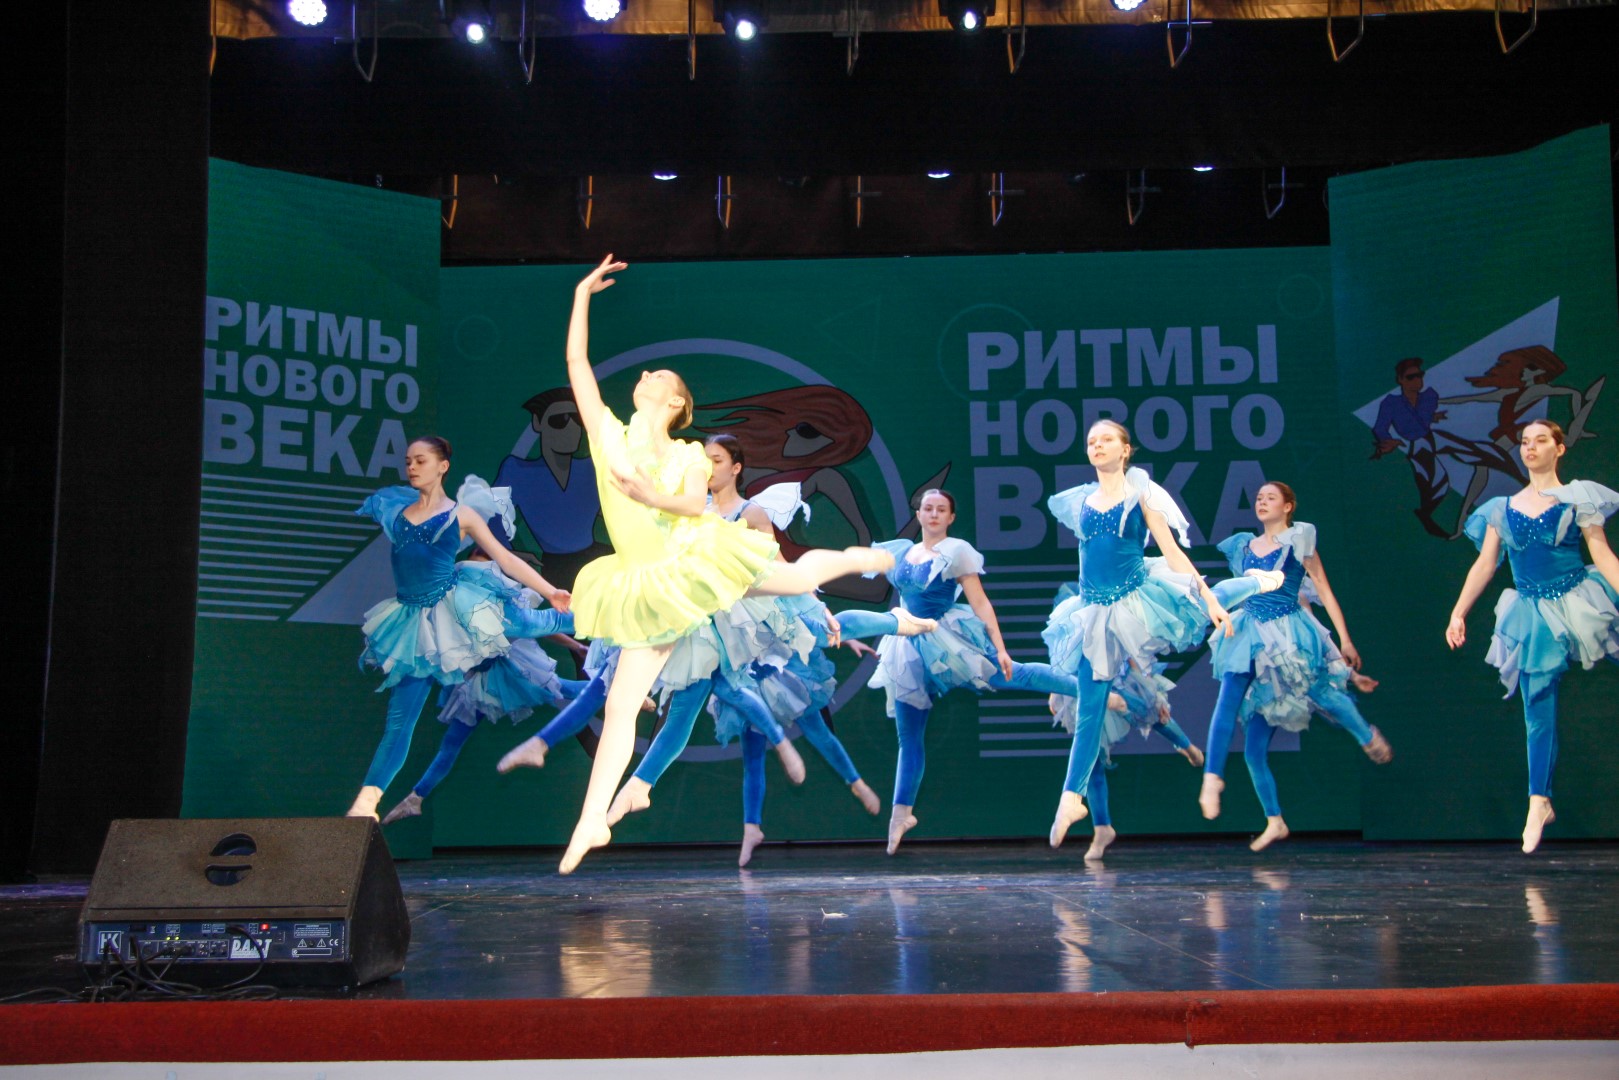 В ДК «Россия» состоялся заключительный этап традиционного фестиваля танца всех стилей и направлений «Ритмы нового века» для старшей возрастной категории